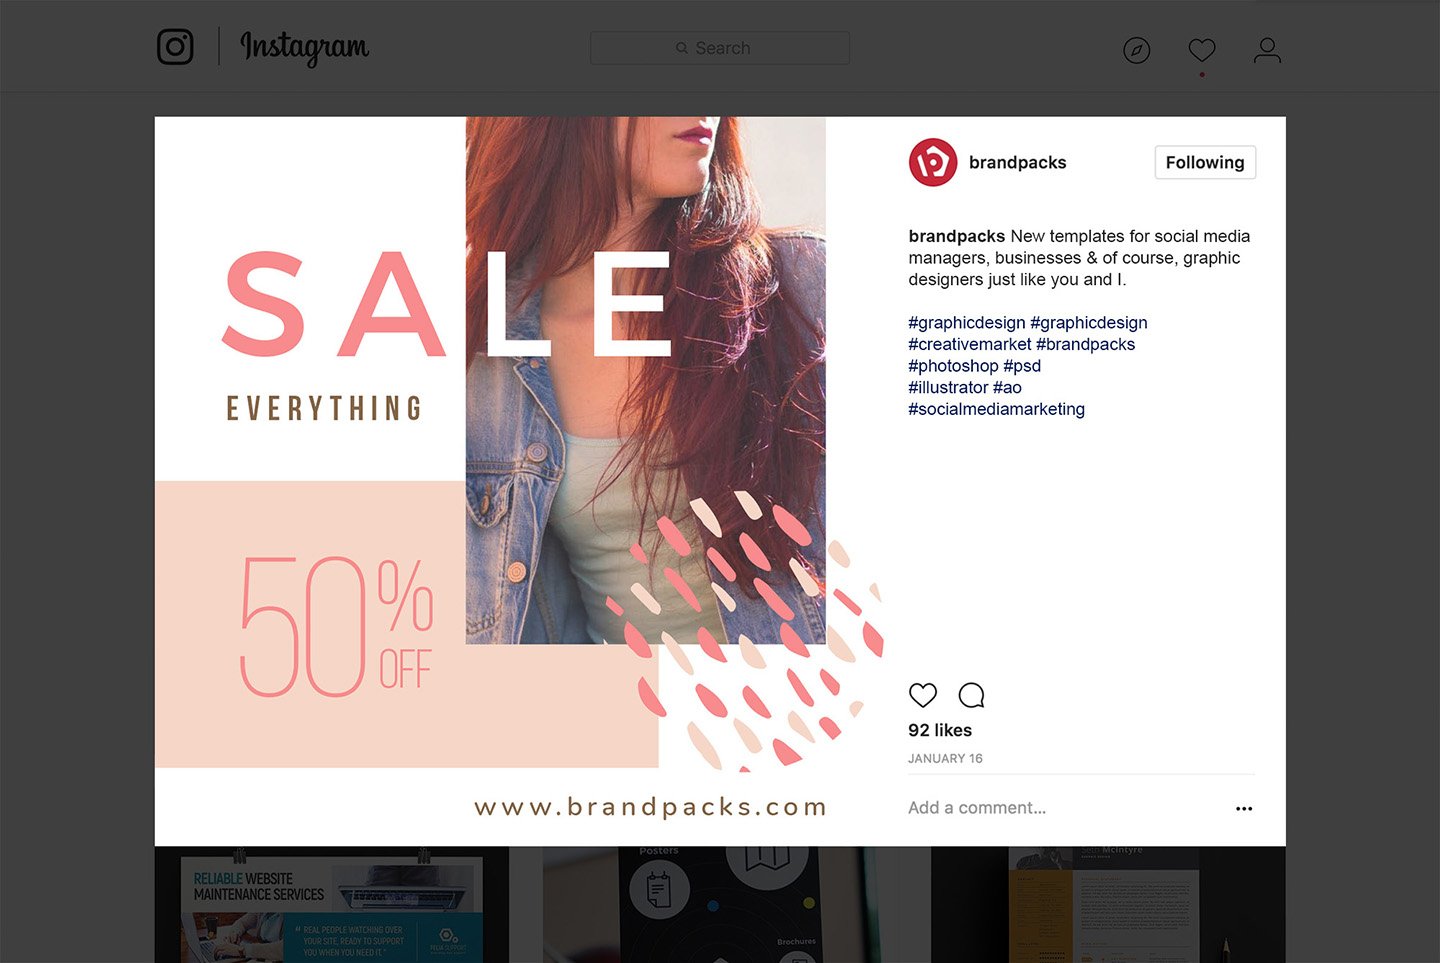 粉色系女性化妆品服装电商营销海报Instagram模板 Social Media Templates Pack Vol.5插图15